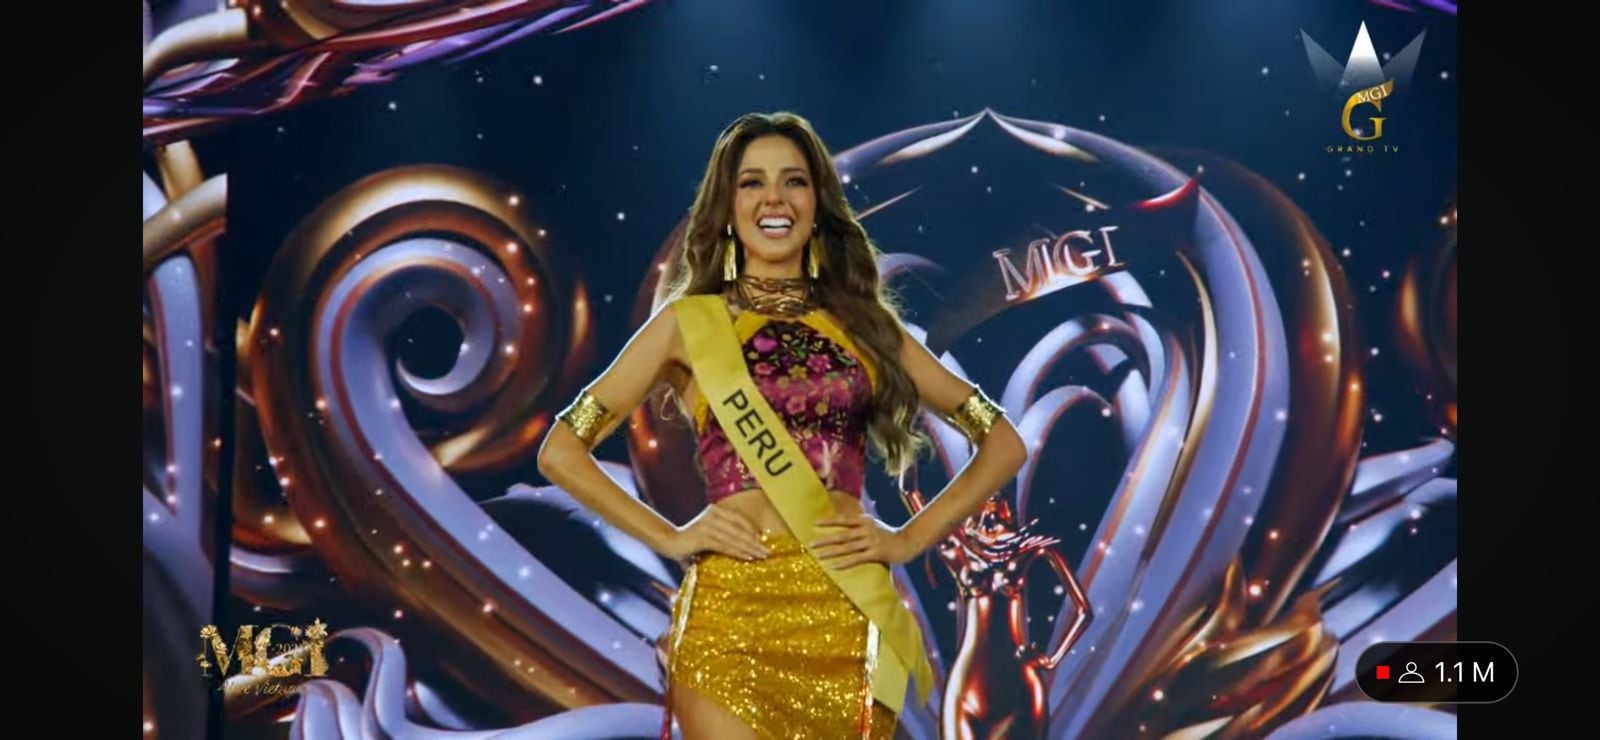 Luciana Fuster clasificó al top 20 en la final del Miss Grand International 2023.